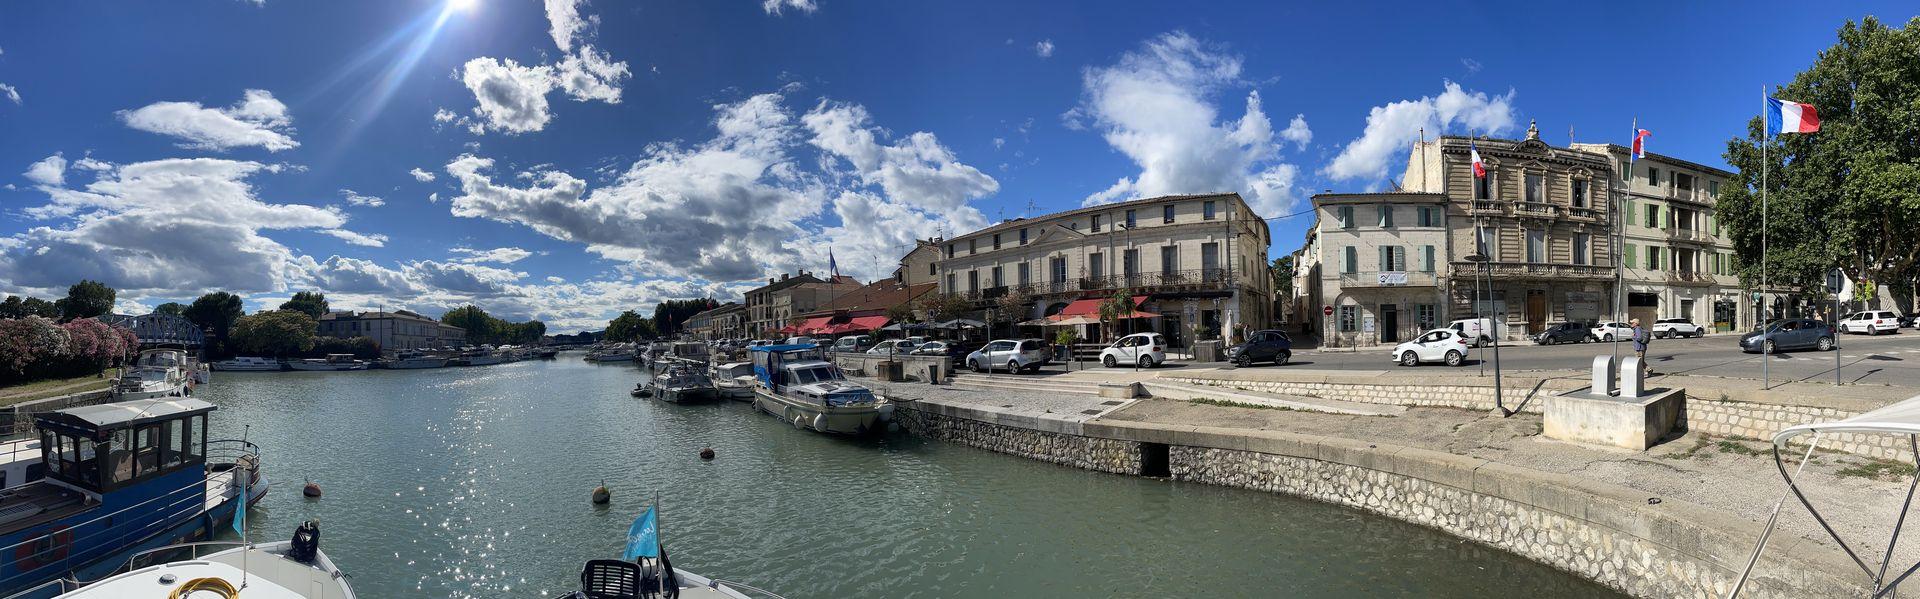 Hausboot mit Hund: Abenteuer voraus! Über den Canal du Rhône à Sète geht es stetig weiter Richtung Beaucaire, dem pittoresken Künstlerort an der Rhone.